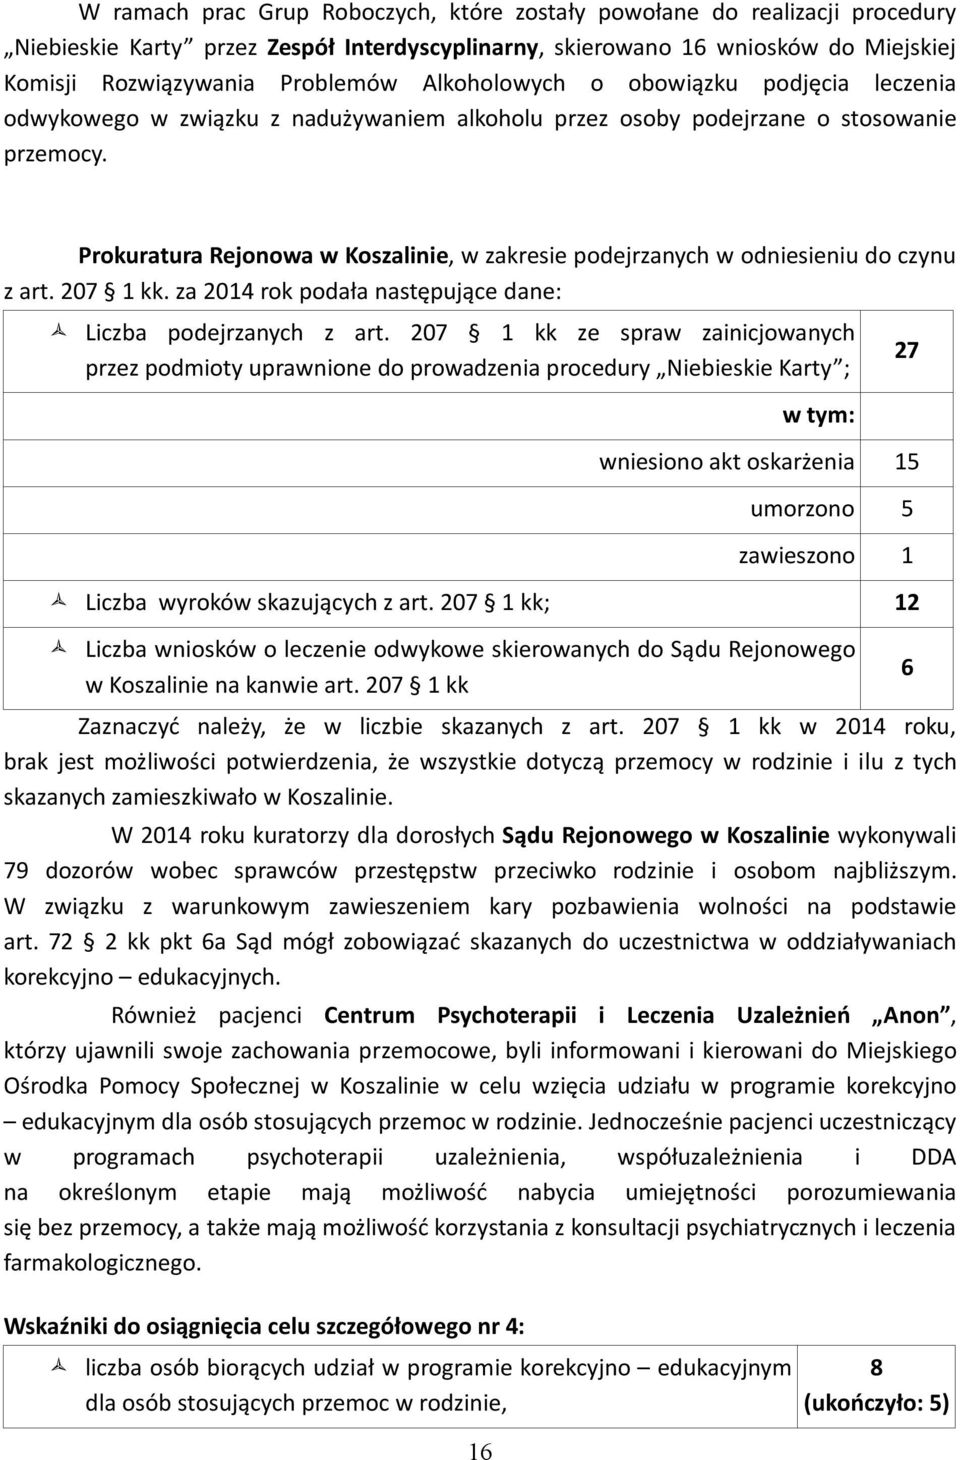 Prokuratura Rejonowa w Koszalinie, w zakresie podejrzanych w odniesieniu do czynu z art. 207 1 kk. za 2014 rok podała następujące dane: Liczba podejrzanych z art.